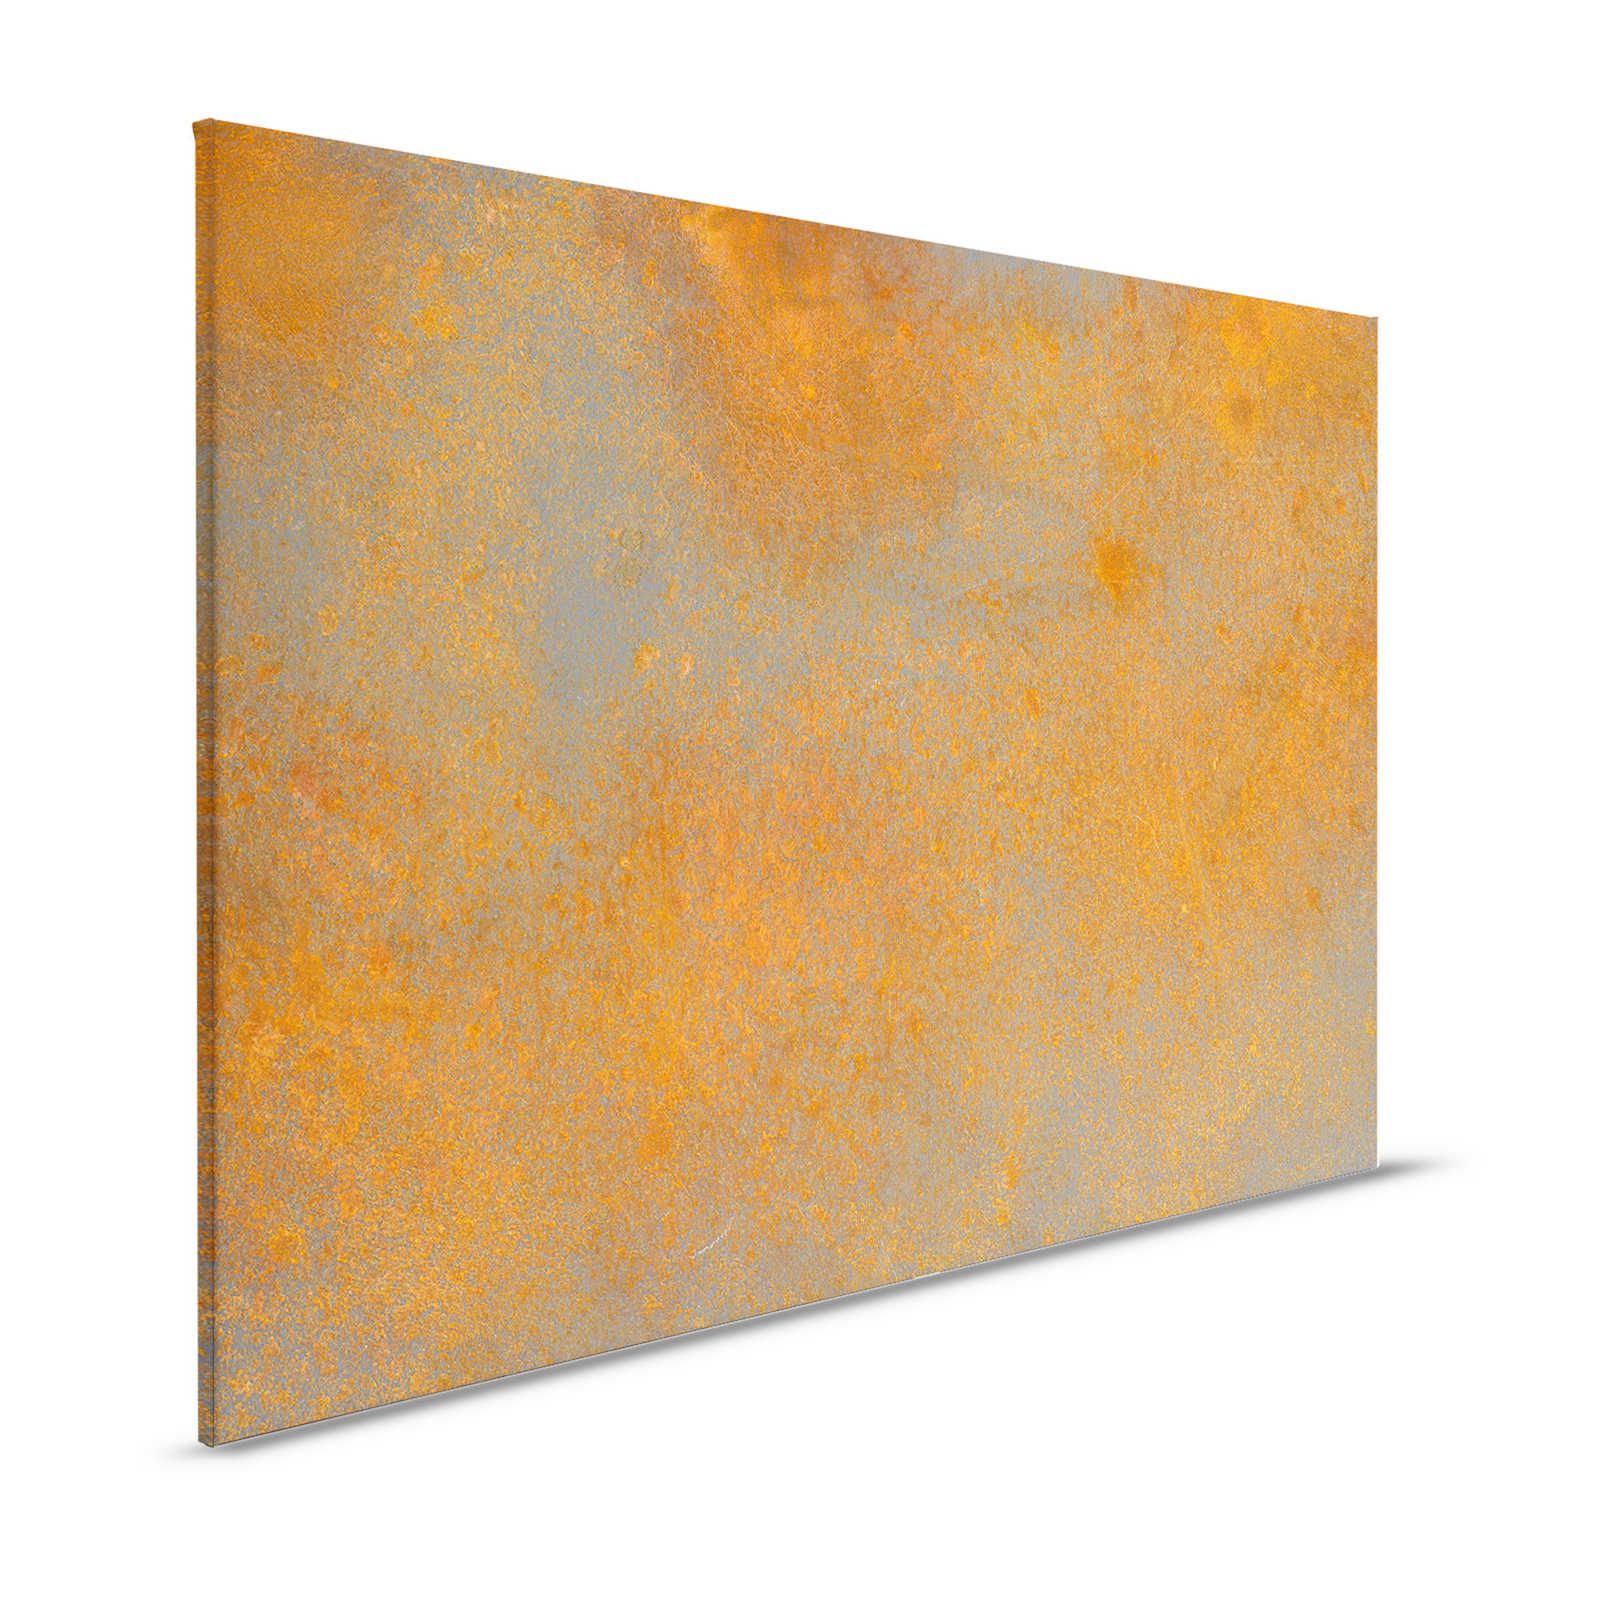 Toile aspect rouille orange marron avec look usé - 1,20 m x 0,80 m
